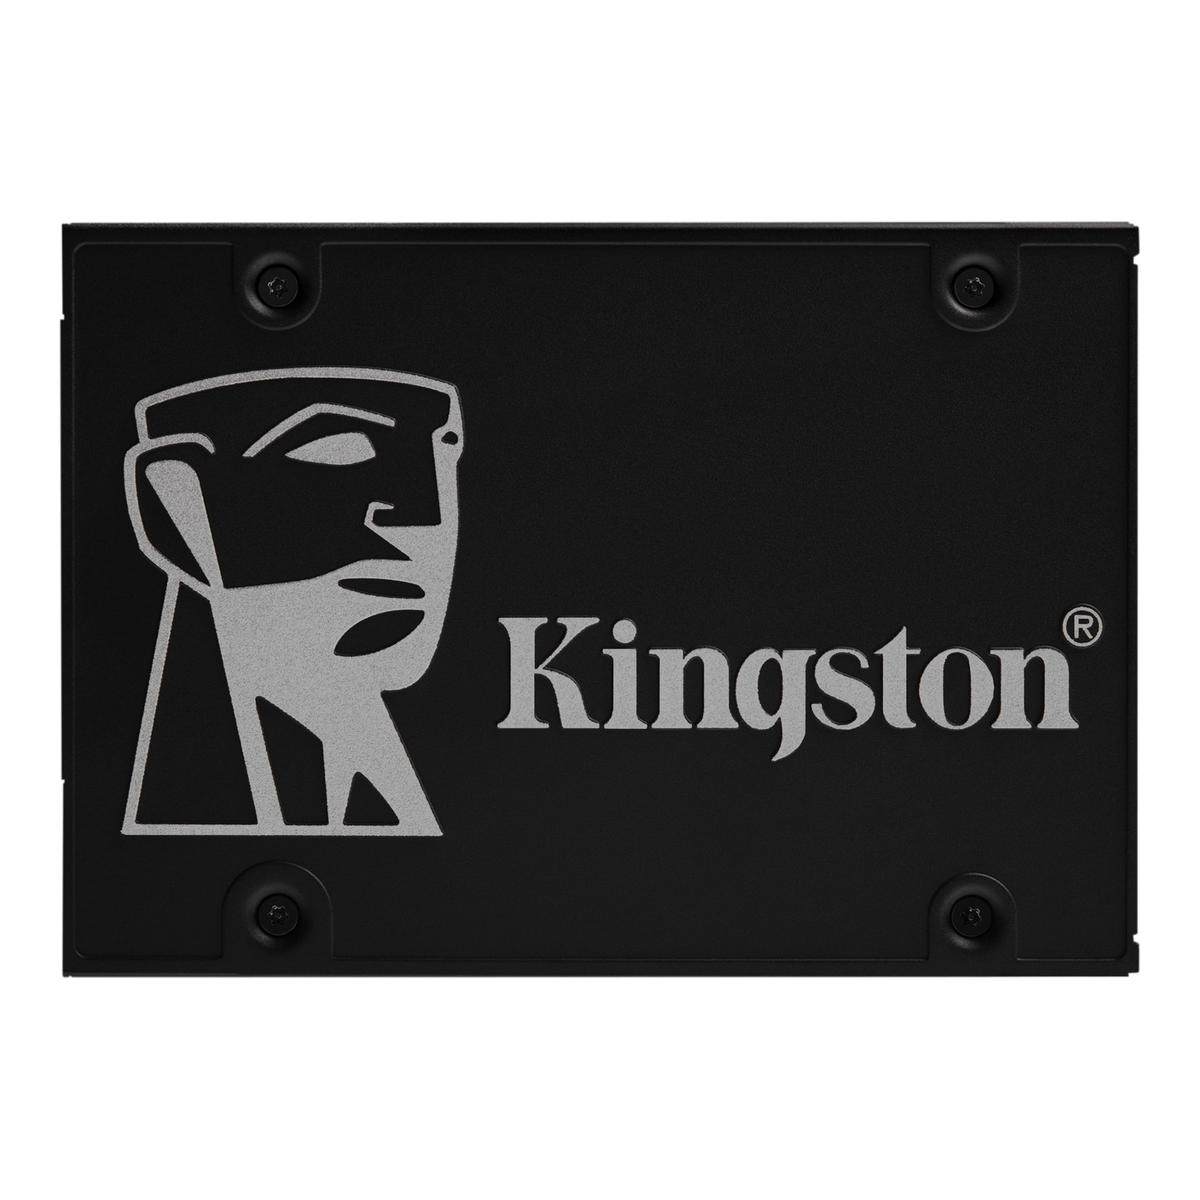  Kingston SSD KC600 256GB